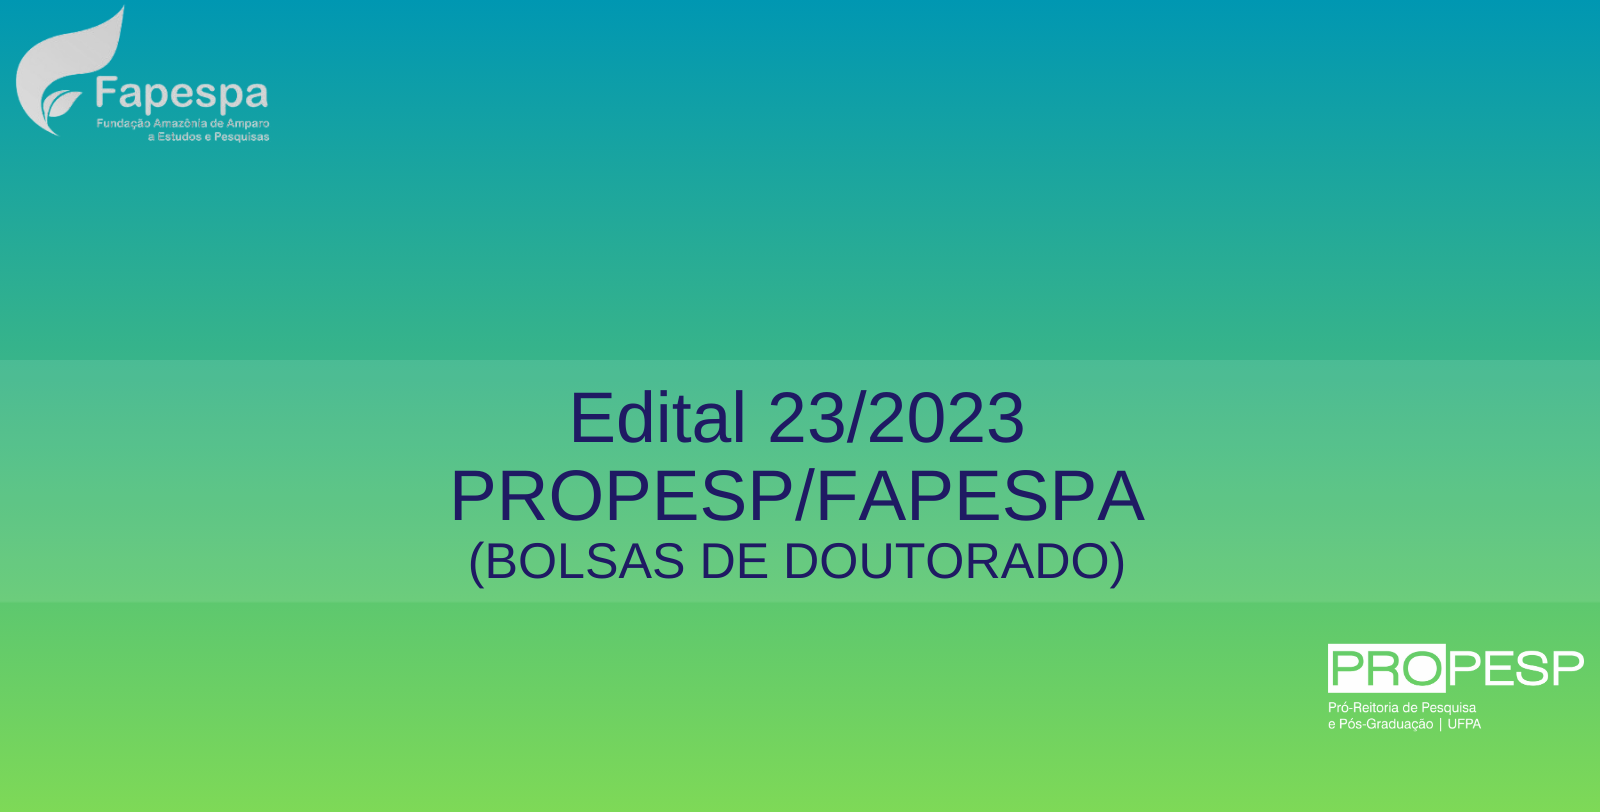 Edital 23/2023 - PROPESP/FAPESPA (Bolsas de Doutorado) - Resultado Preliminar da 2ª Fase